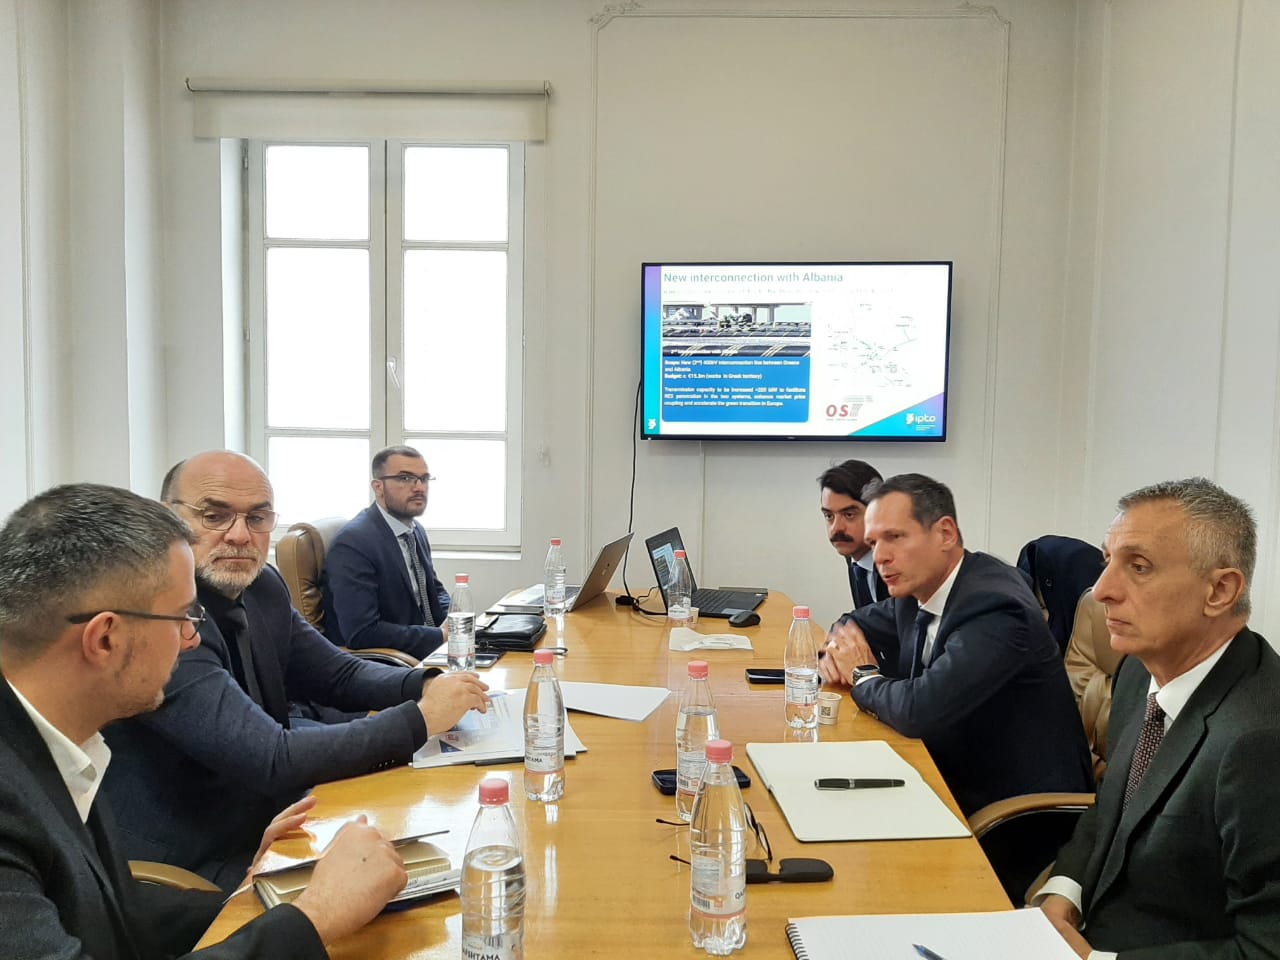 ΑΔΜΗΕ: Συνάντηση εργασίας με τον Διαχειριστή της Αλβανίας για την ενίσχυση της συνεργασίας